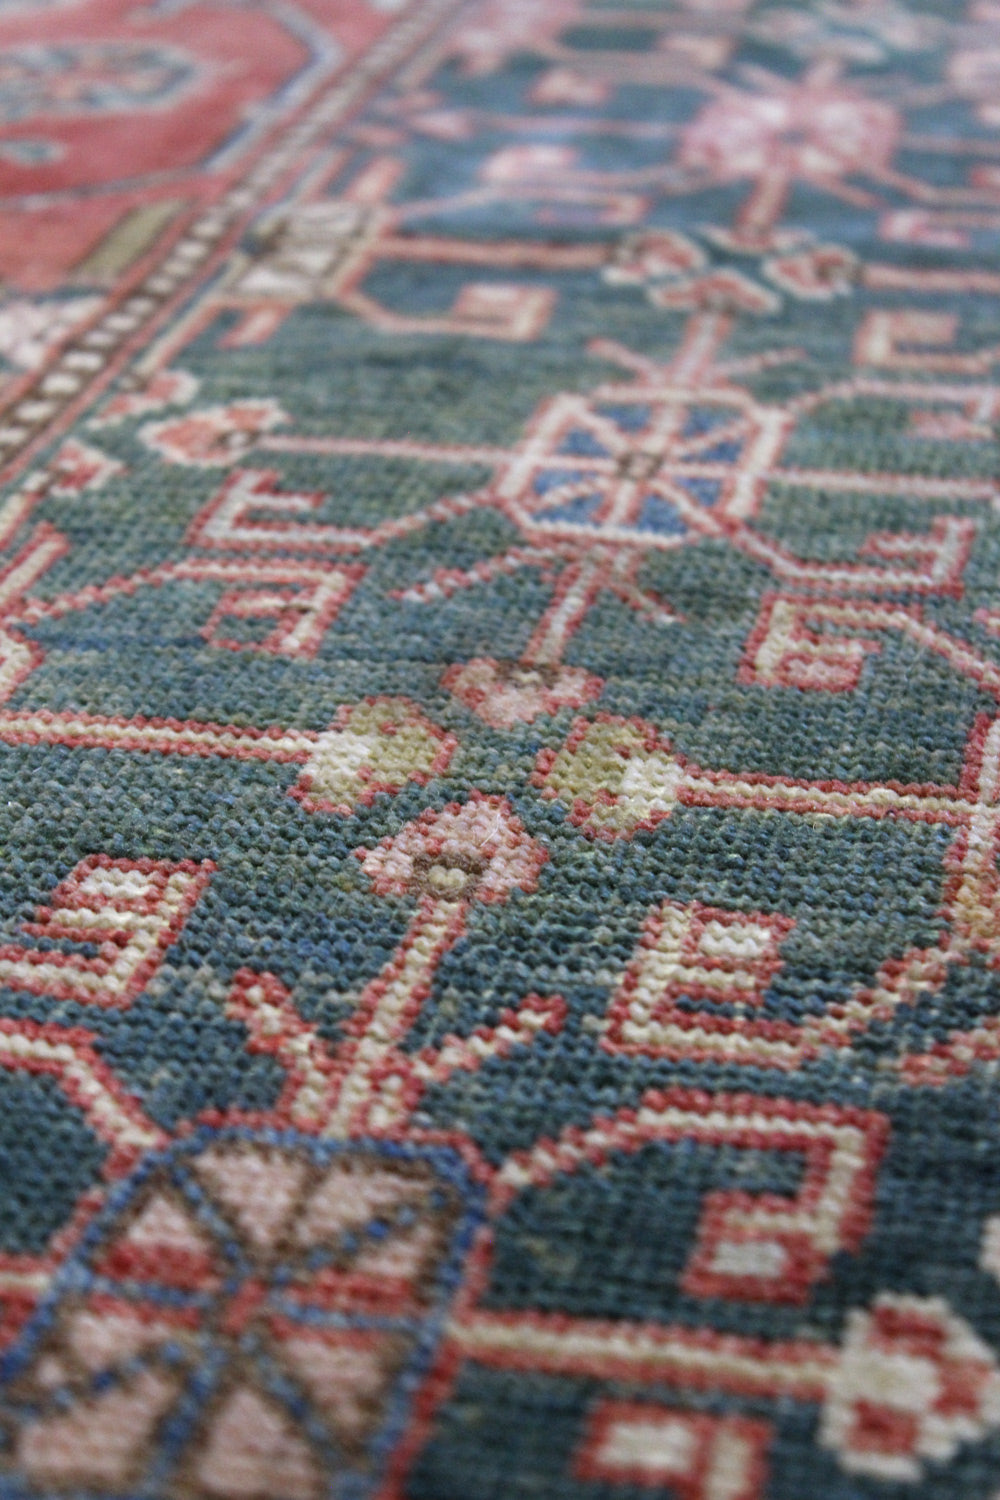 Khotan Handwoven Traditional Rug, J68707